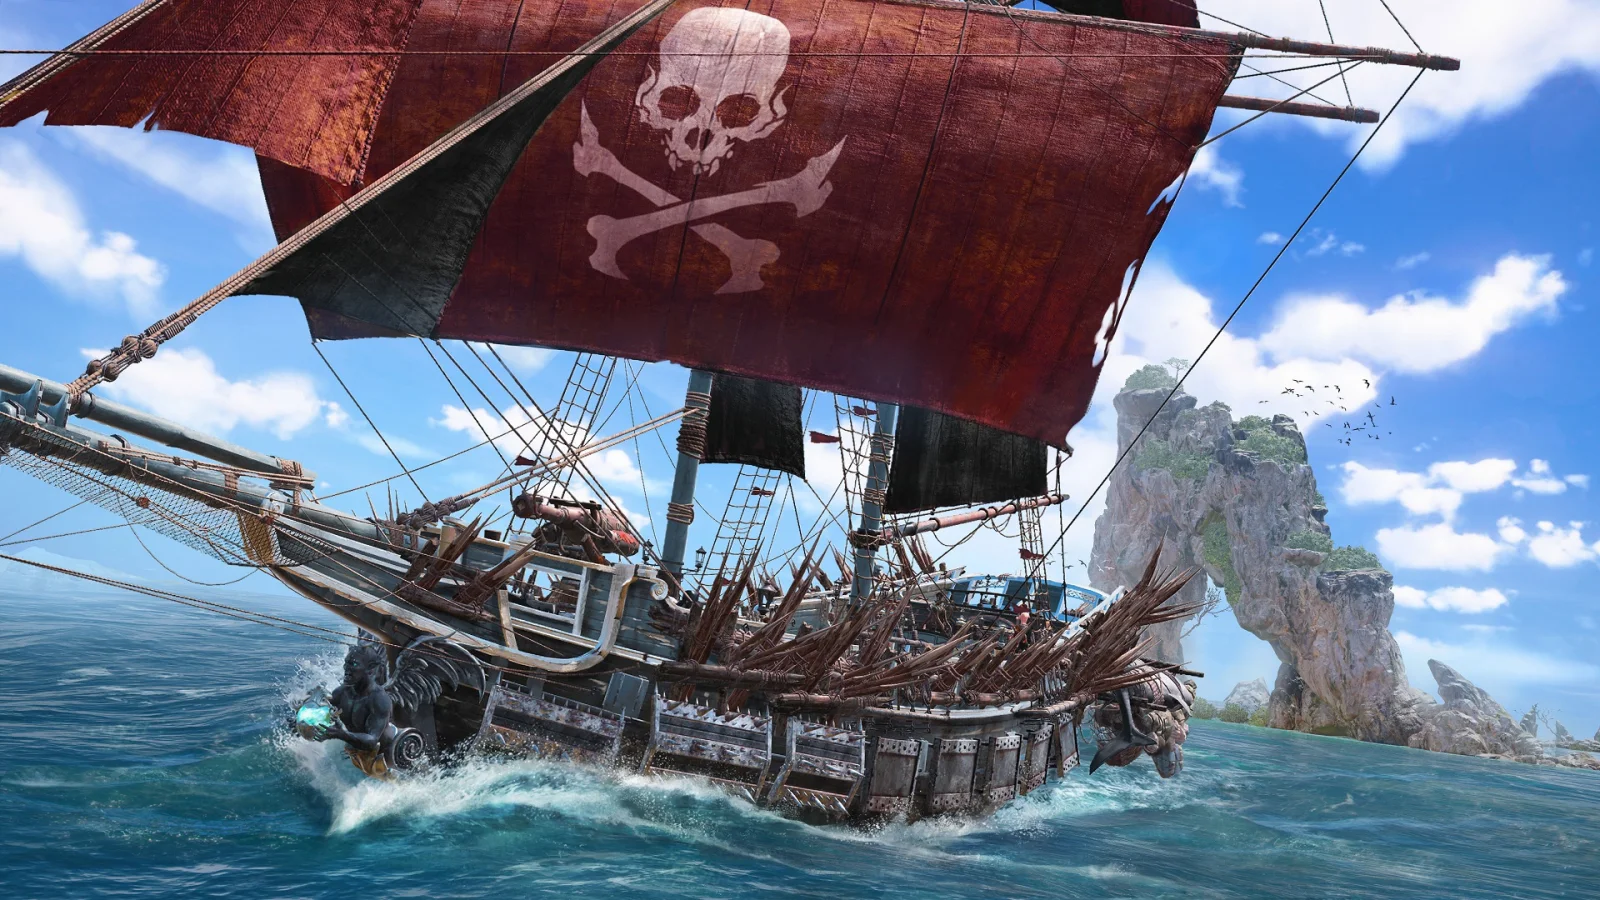 来建立你的海盗帝国！《碧海黑帆》将于11月8日正式发售